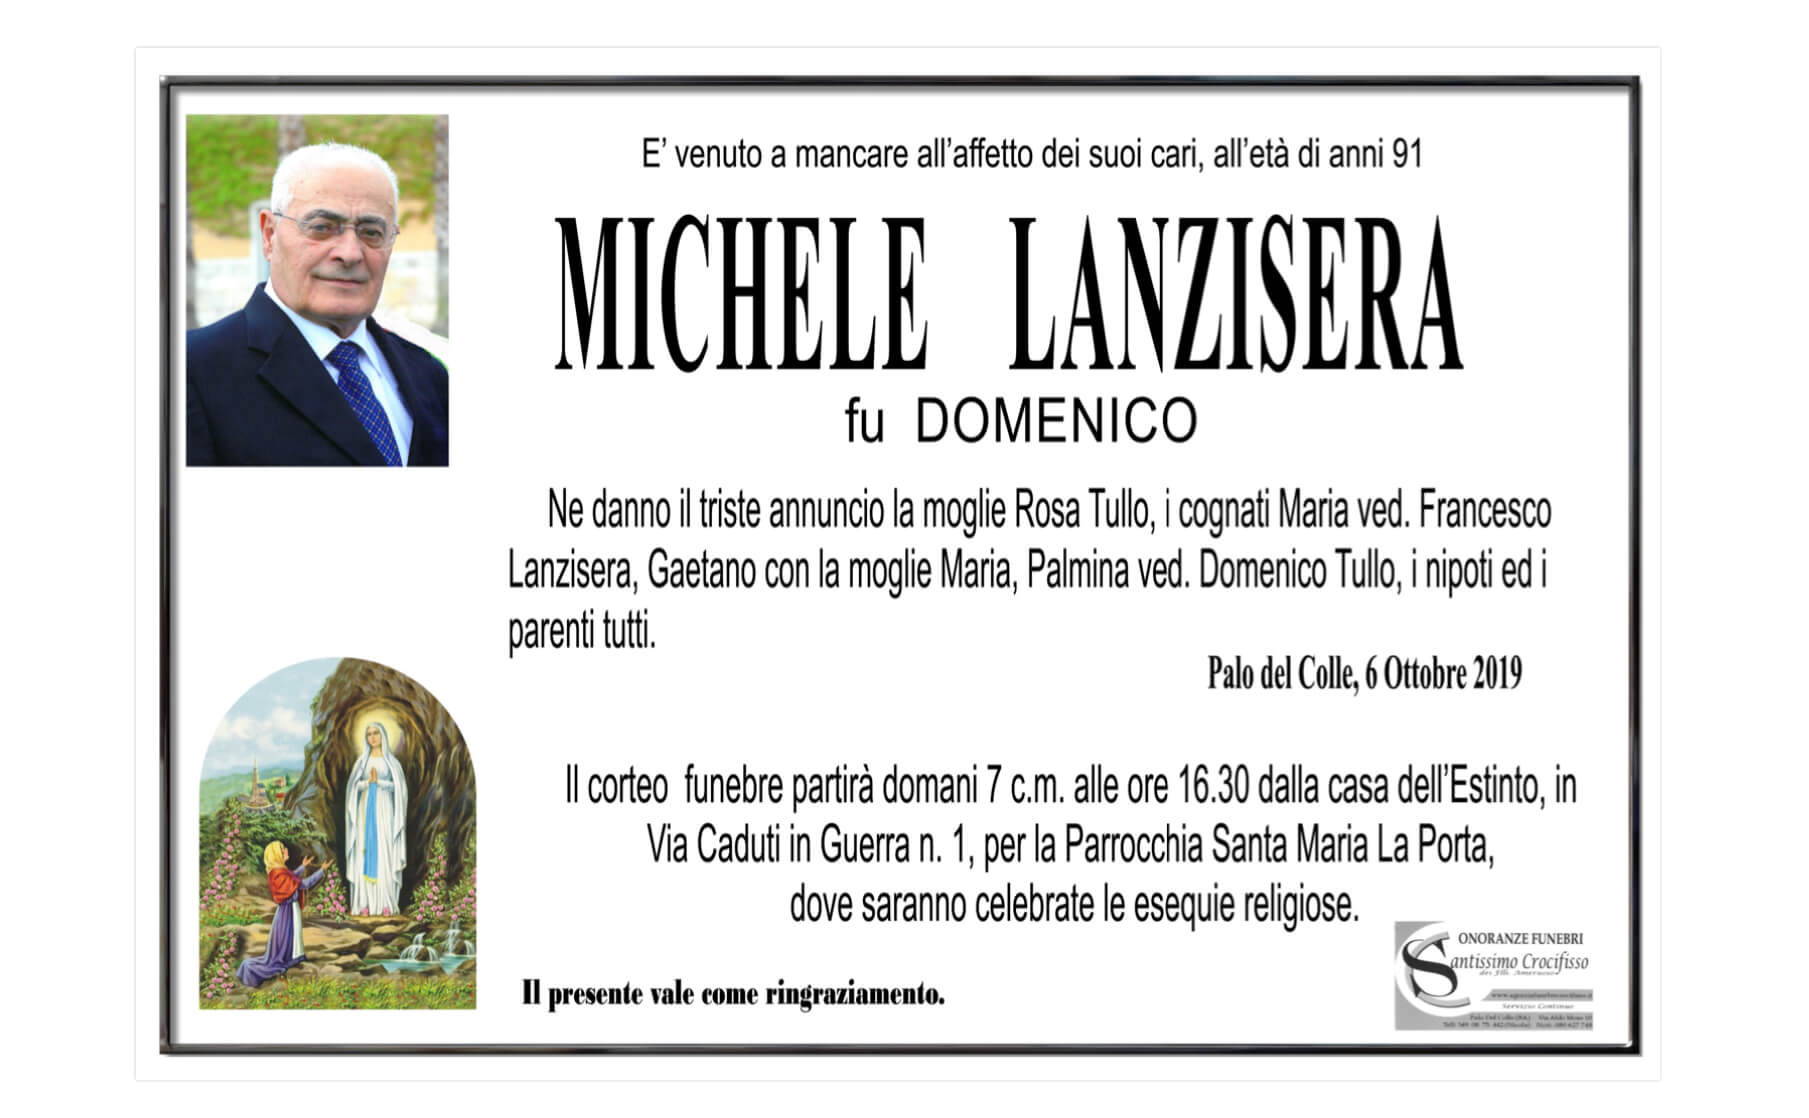 Michele Lanzisera